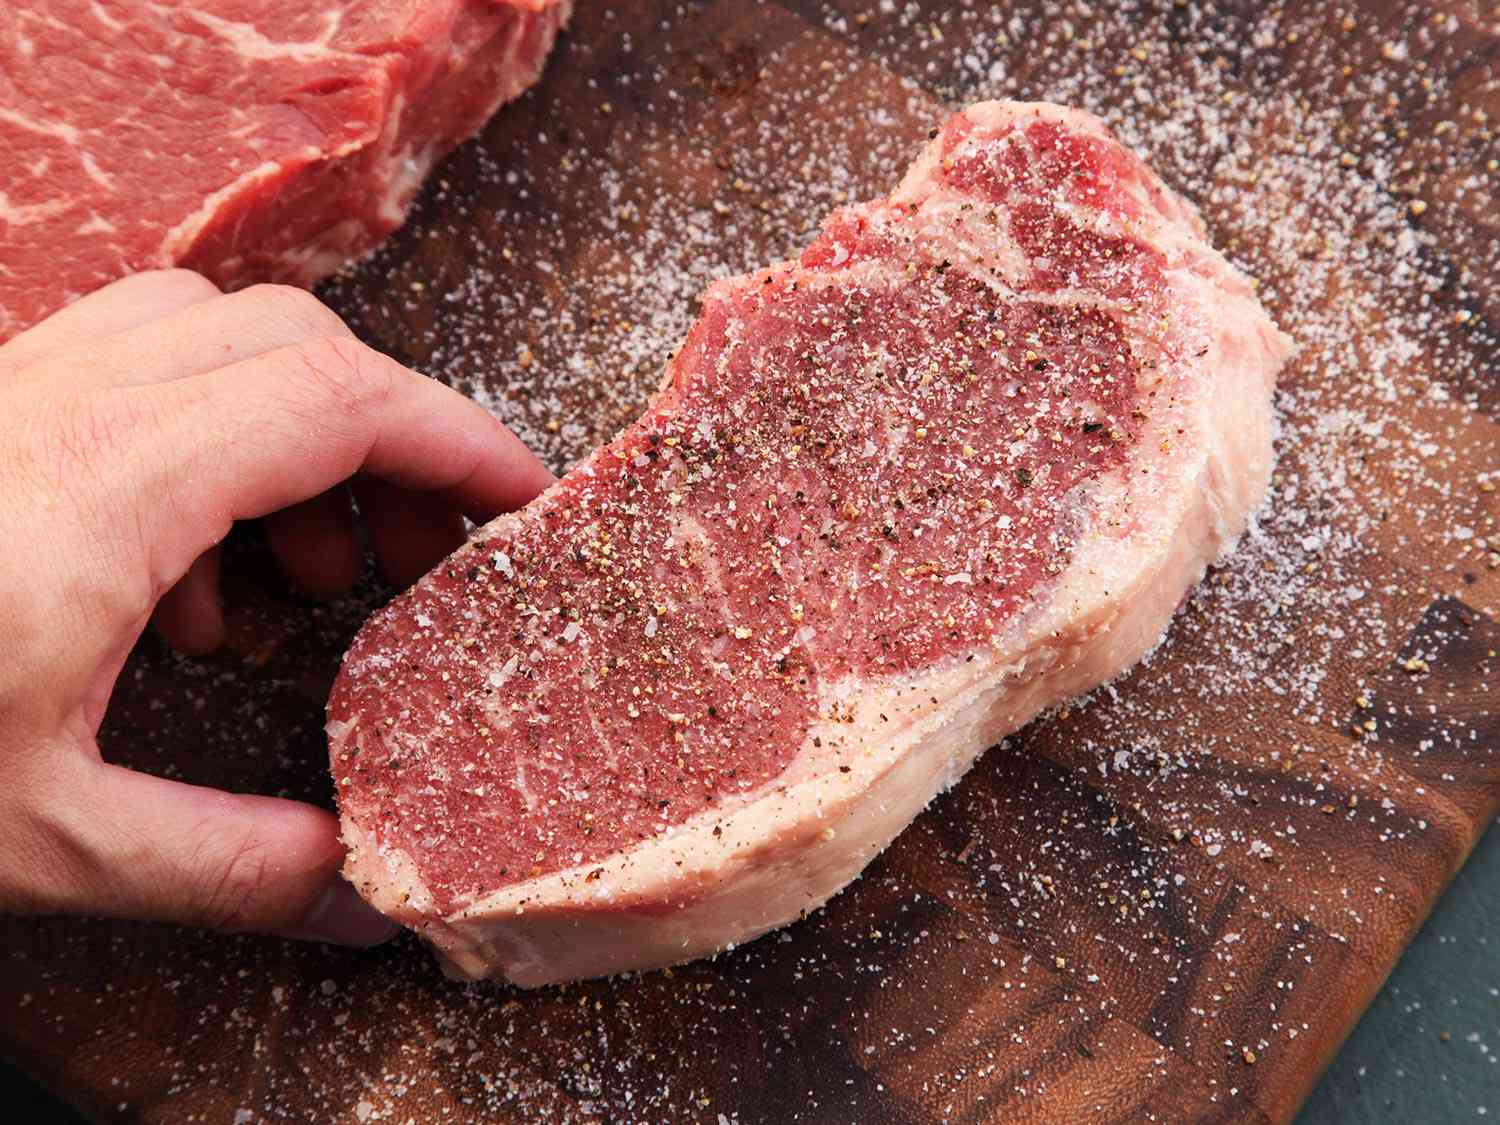 Anova-Steak-Guide-Sous-Vide-Photos04-seasoning.jpg